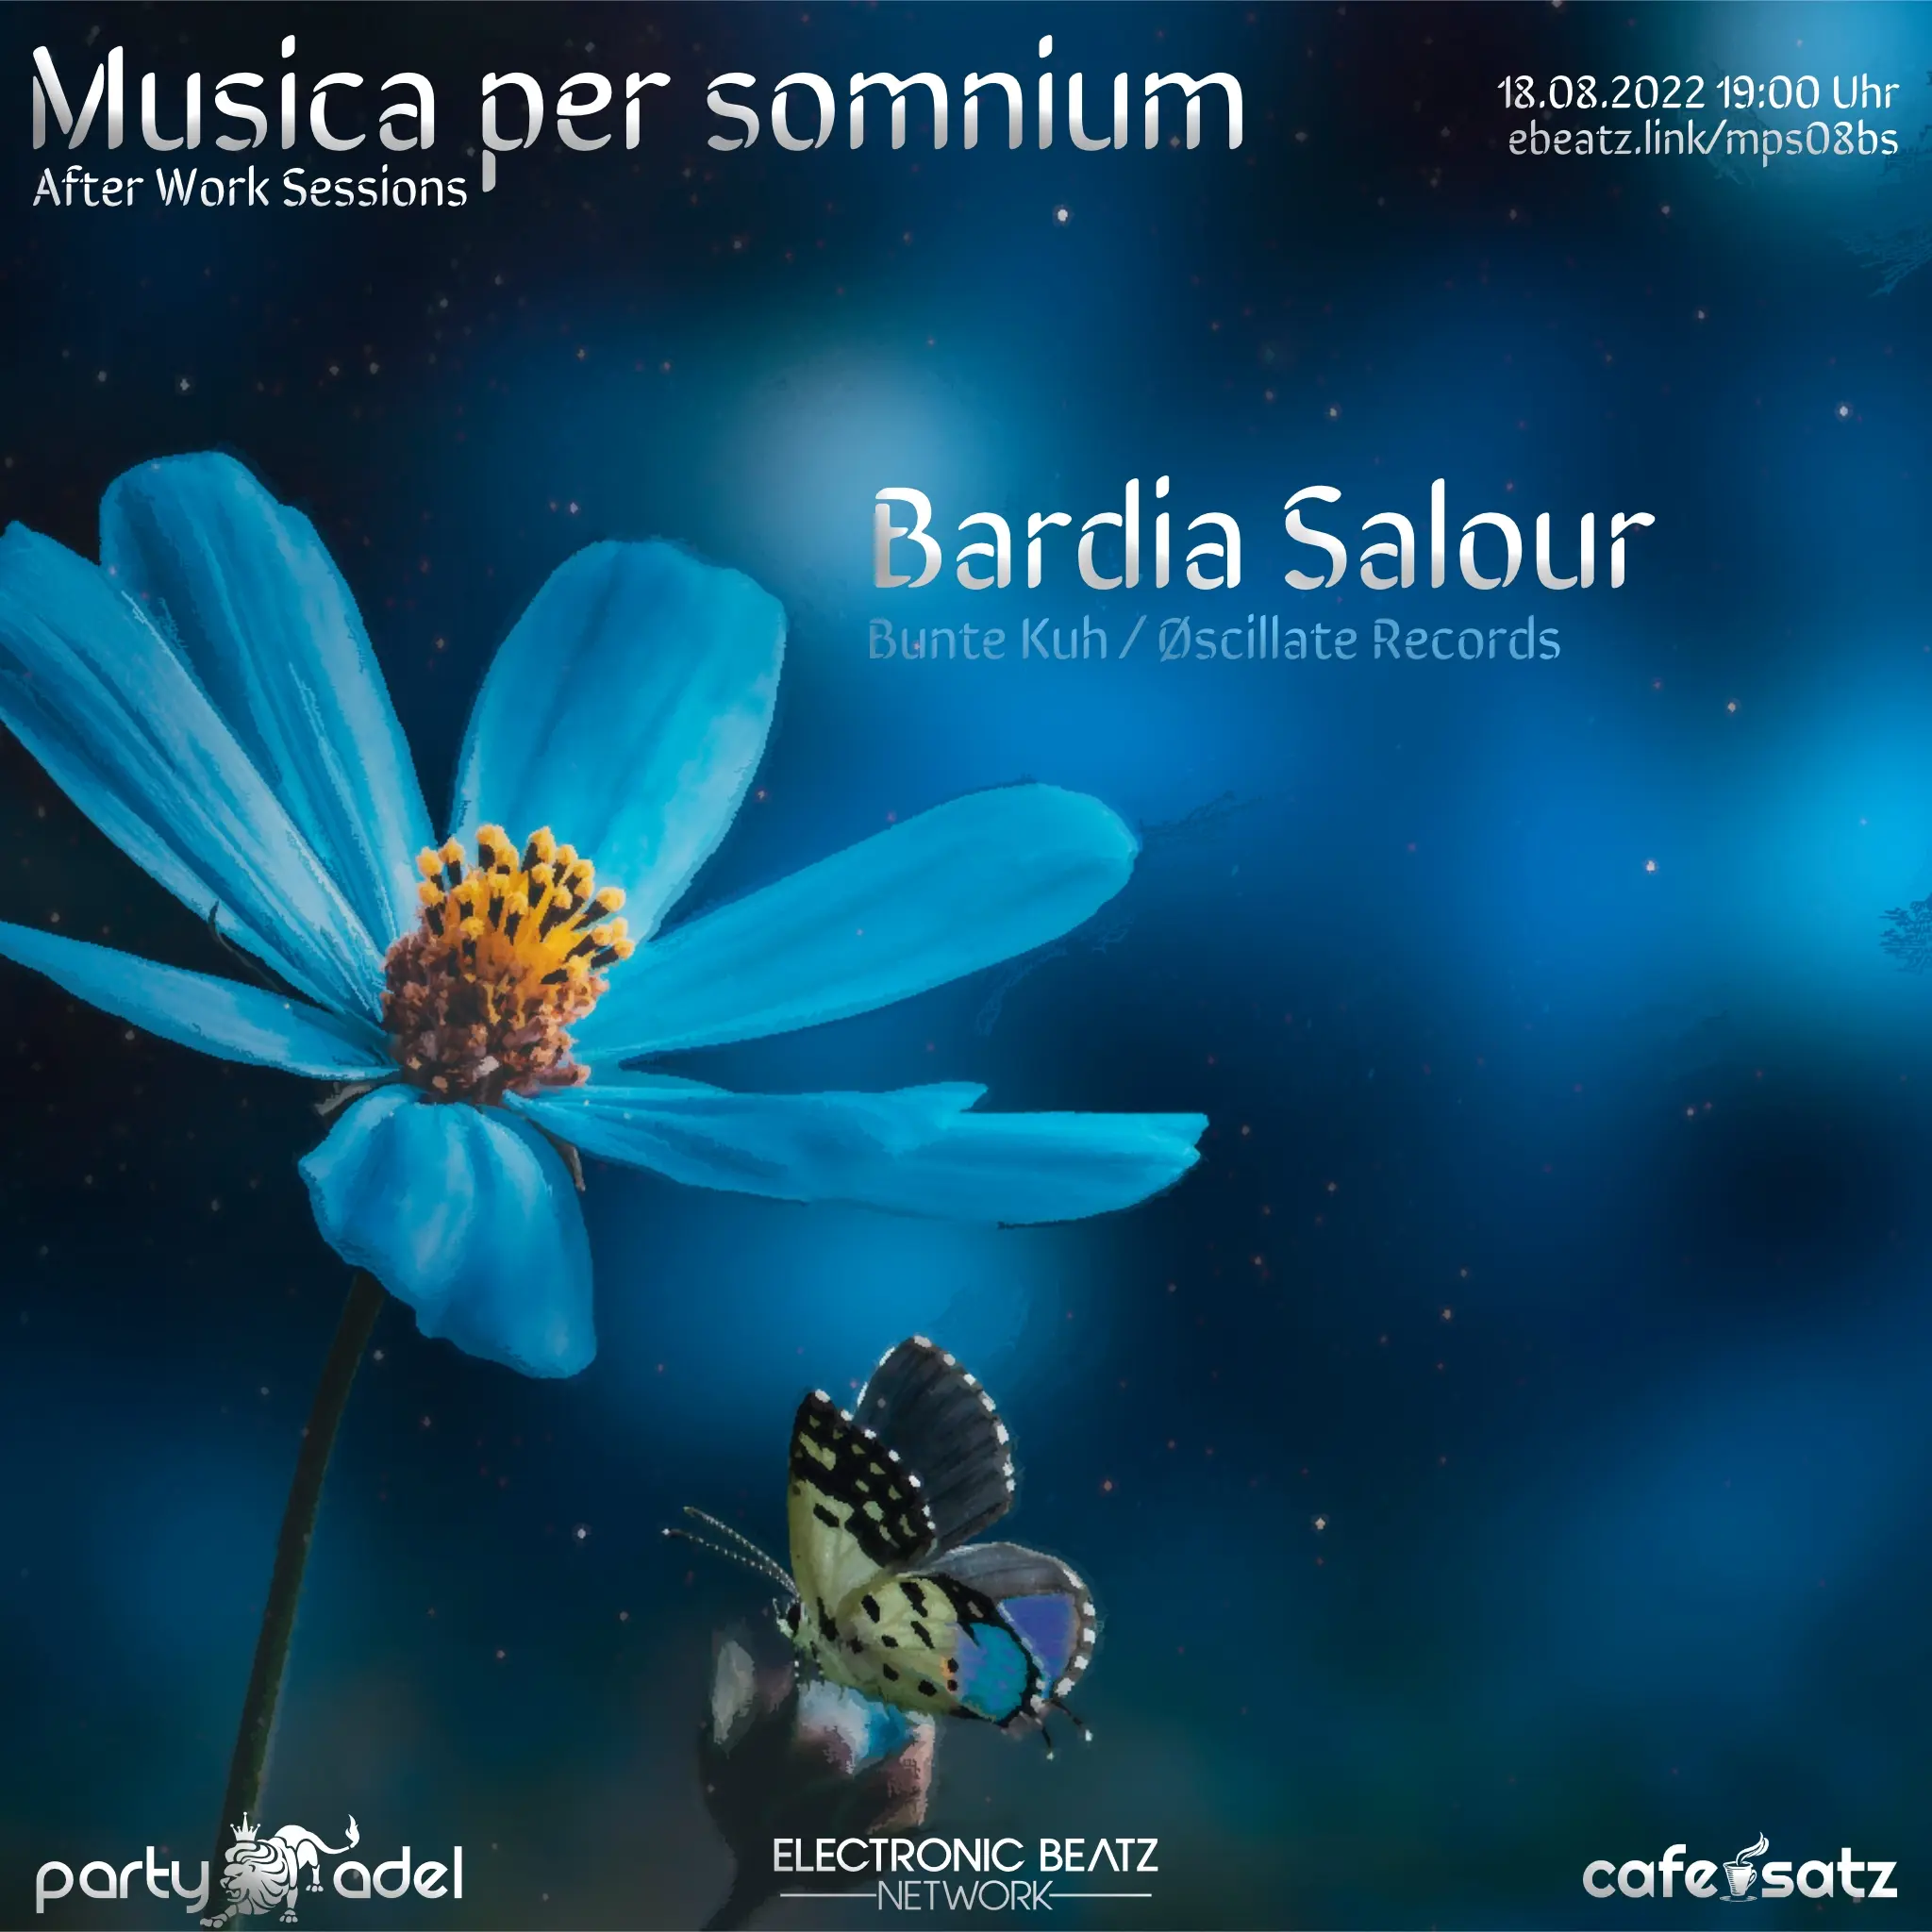 Bardia Salour @ Musica per somnium (18.08.2022)